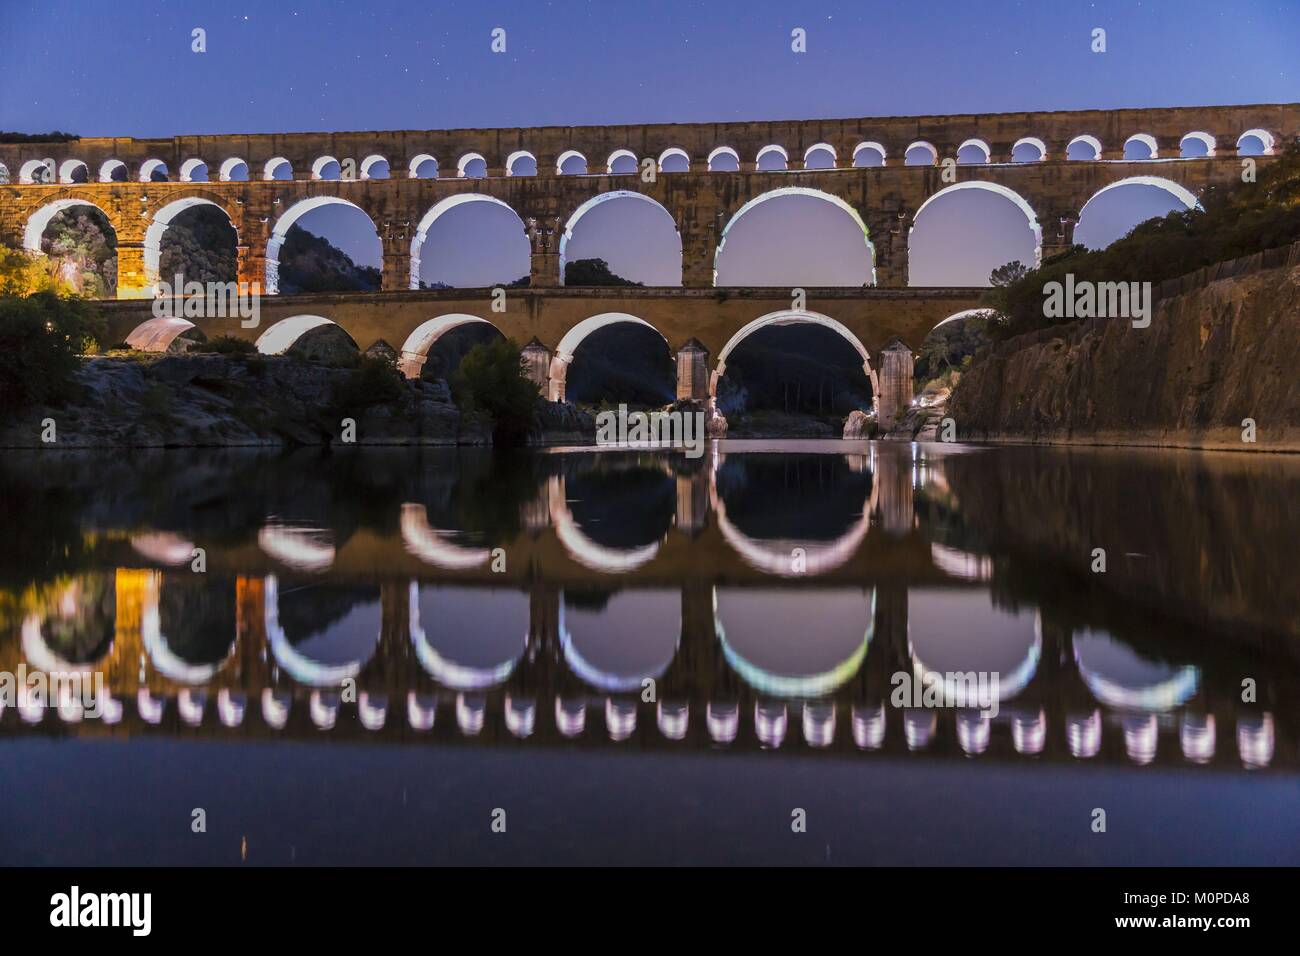 Frankreich, Gard, Vers Pont du Gard die Pont du Gard als Weltkulturerbe von der UNESCO, Big Site von Frankreich, römische Aquädukt aus dem 1. Jahrhundert, die Schritte über den Gardon, Konzeption Licht von Guillaume Sarrouy Stockfoto